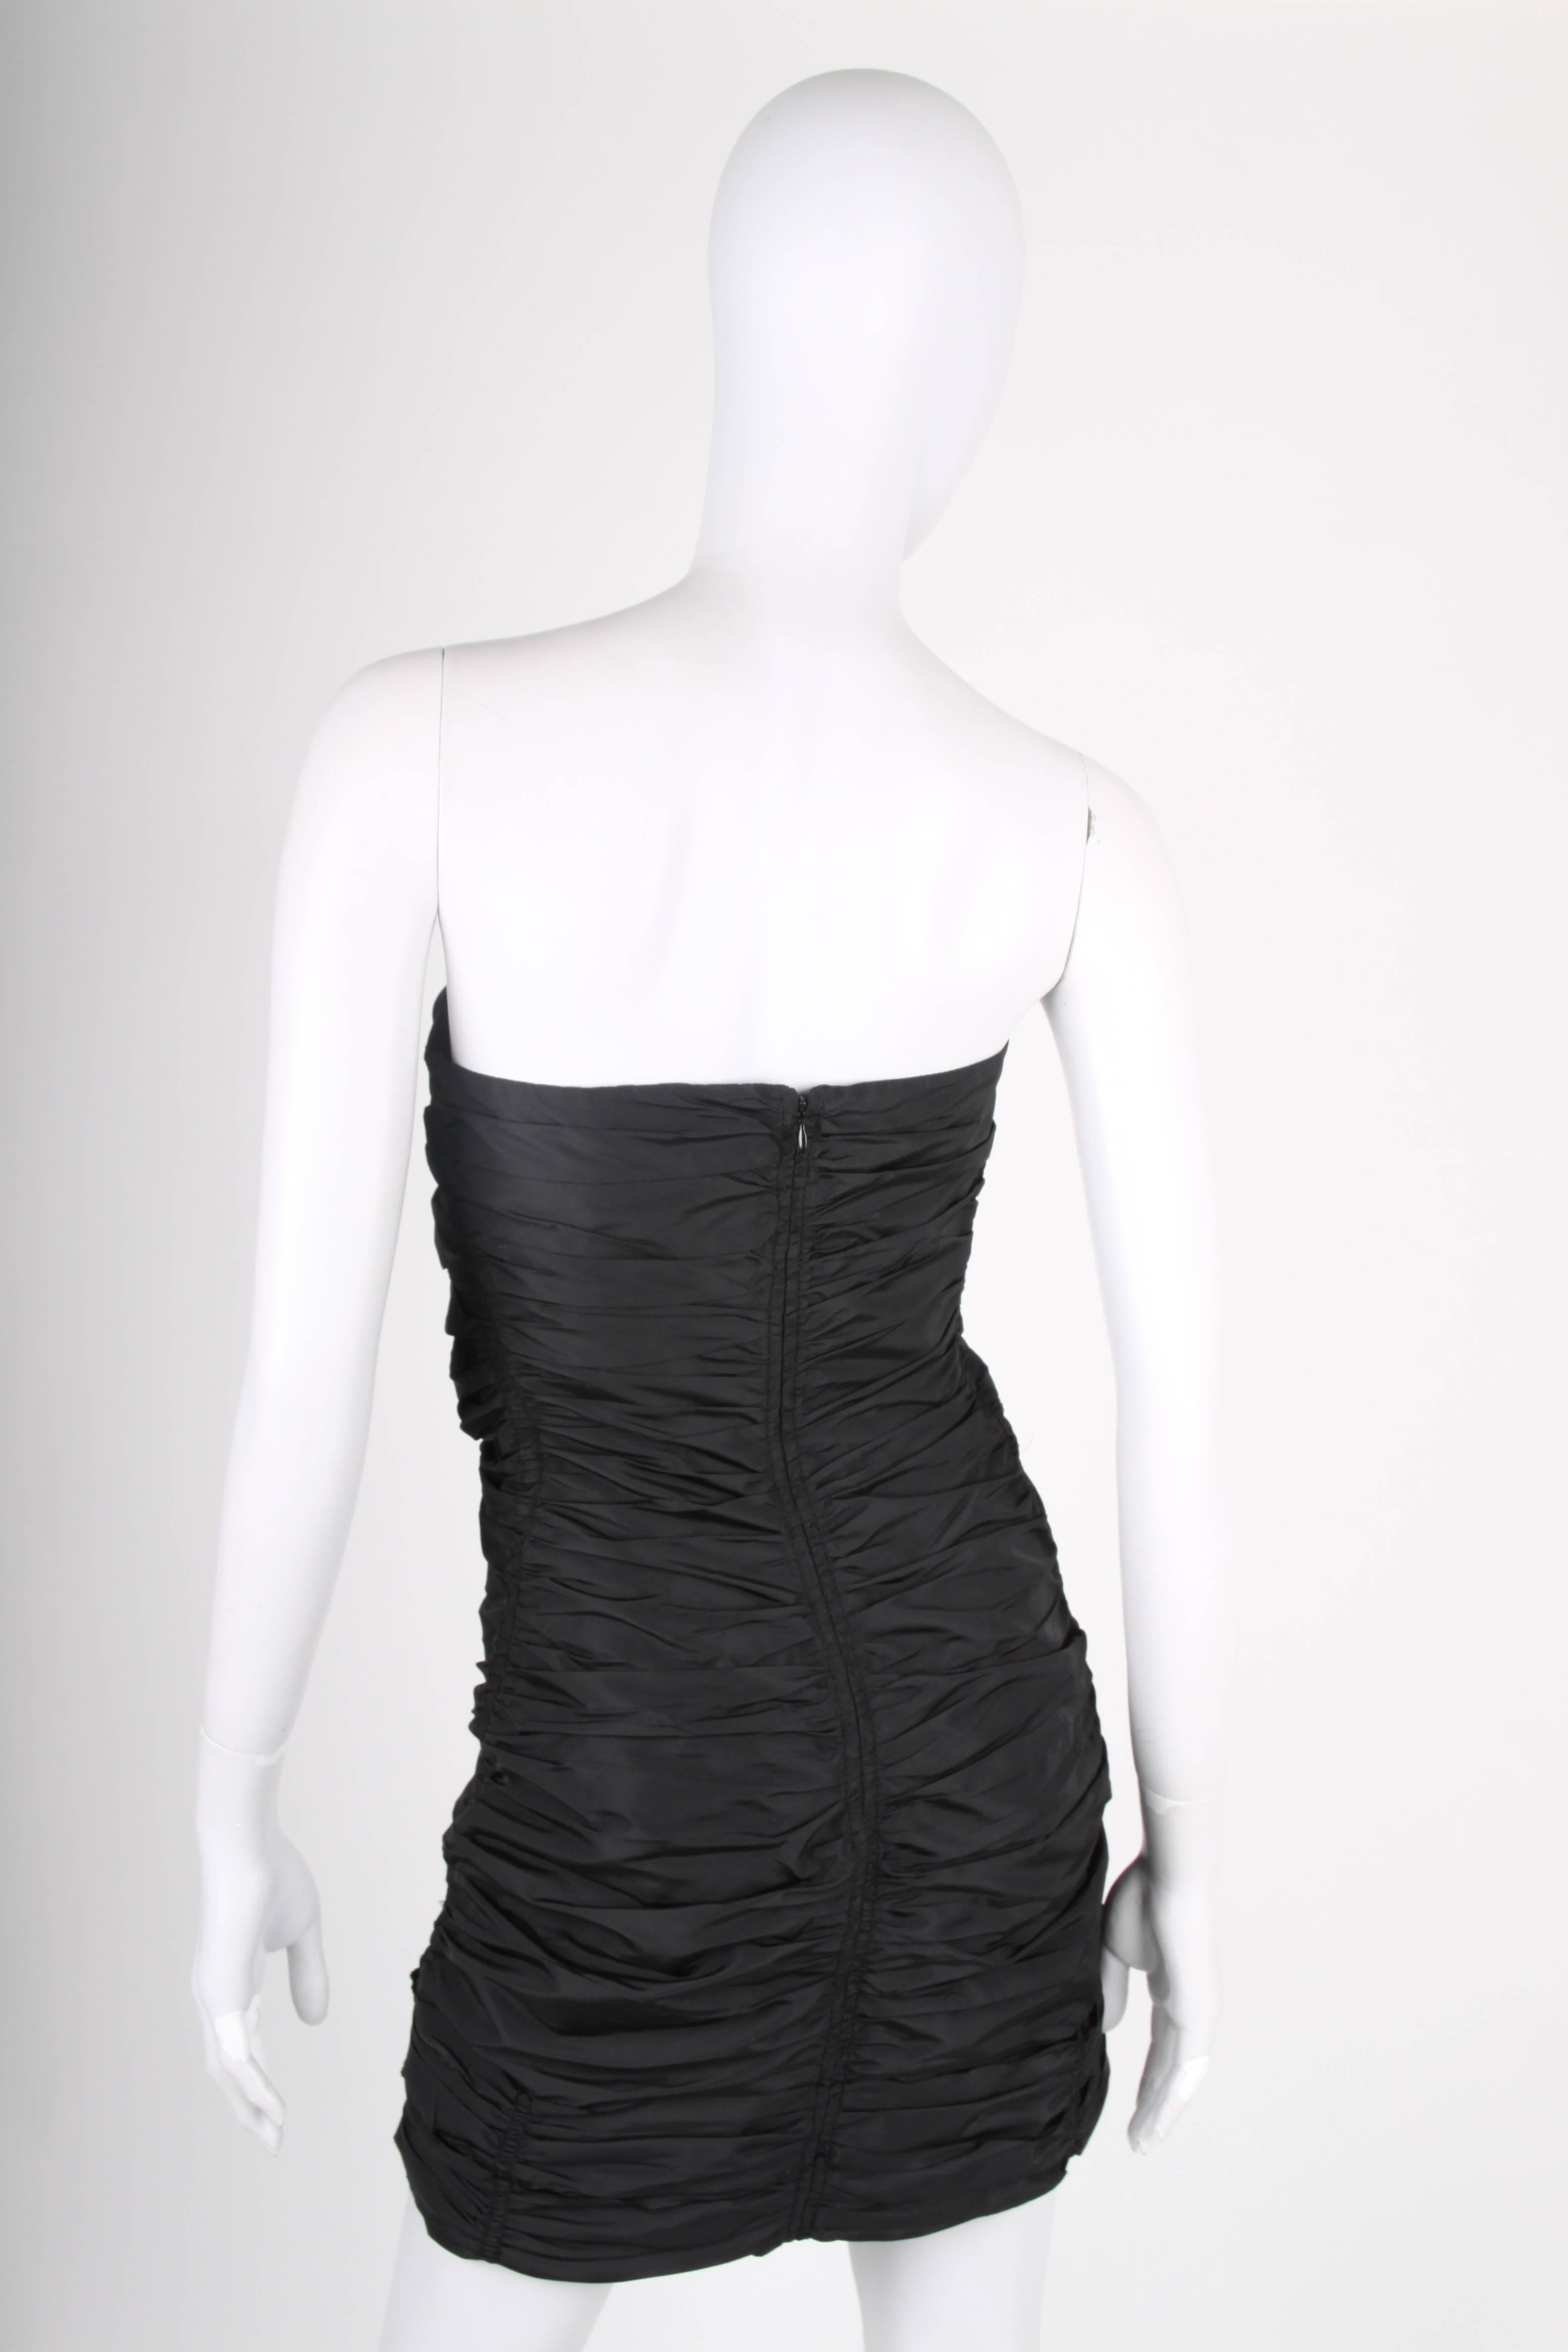 Black   MIU MIU Strapless Dress - black   MIU MIU Strapless Dress - black MIU MIU Stra For Sale